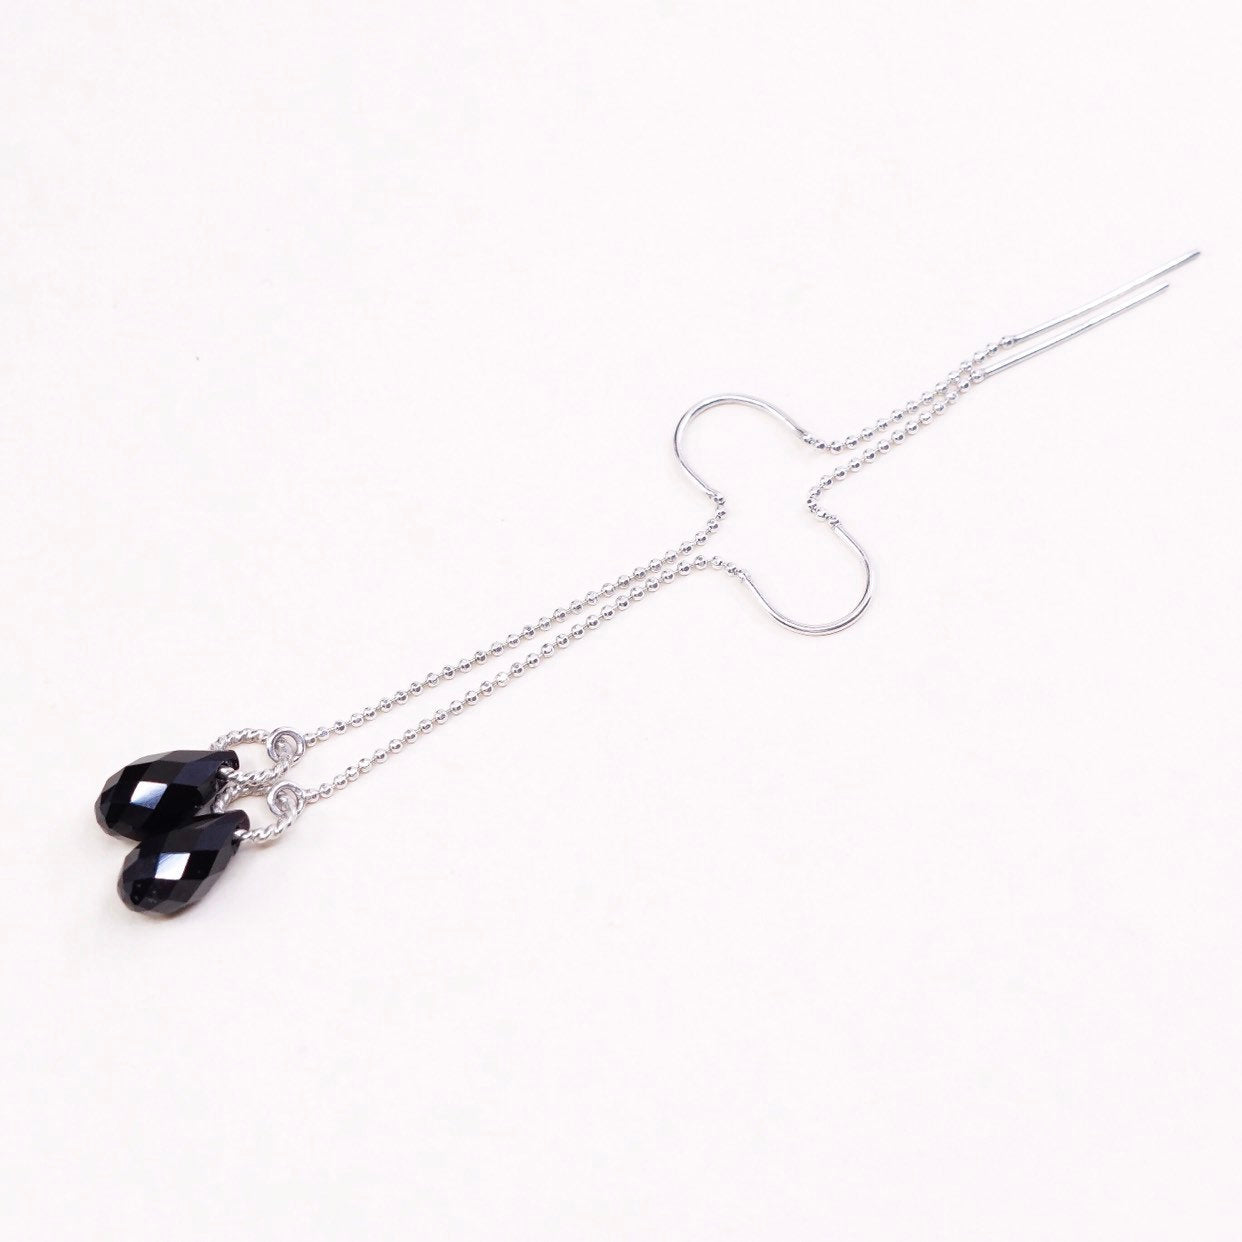 VTG sterling silver handmade earrings, 925 chain w/ teardrop obsidian dangles